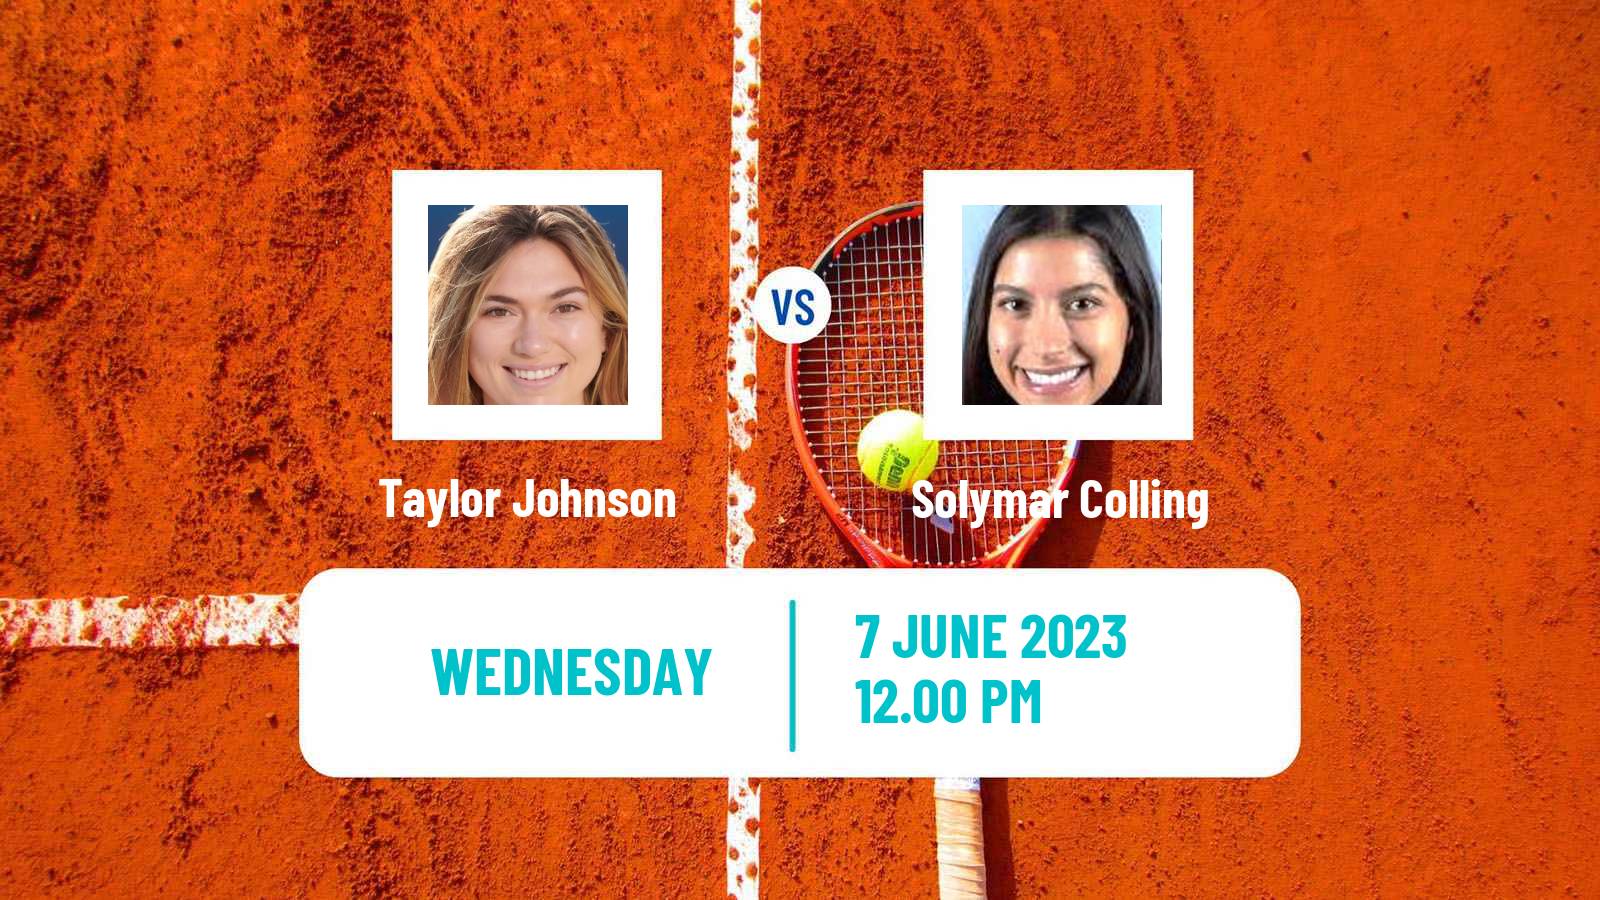 Tennis ITF W15 San Diego Ca Women Taylor Johnson - Solymar Colling